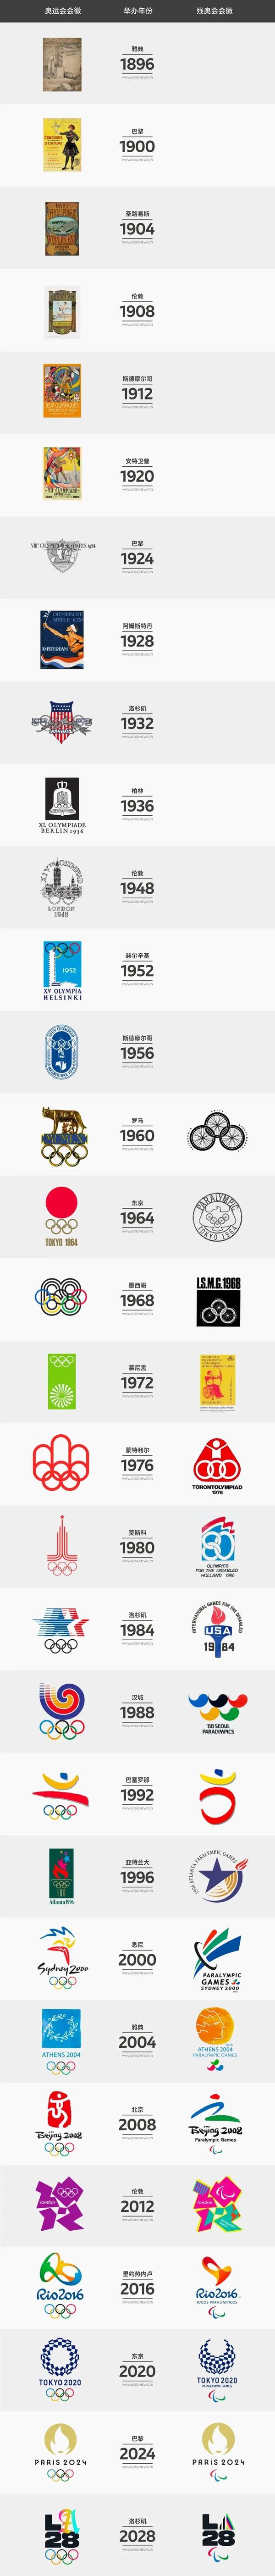 世界上最美的奥运会会徽竟然是它?